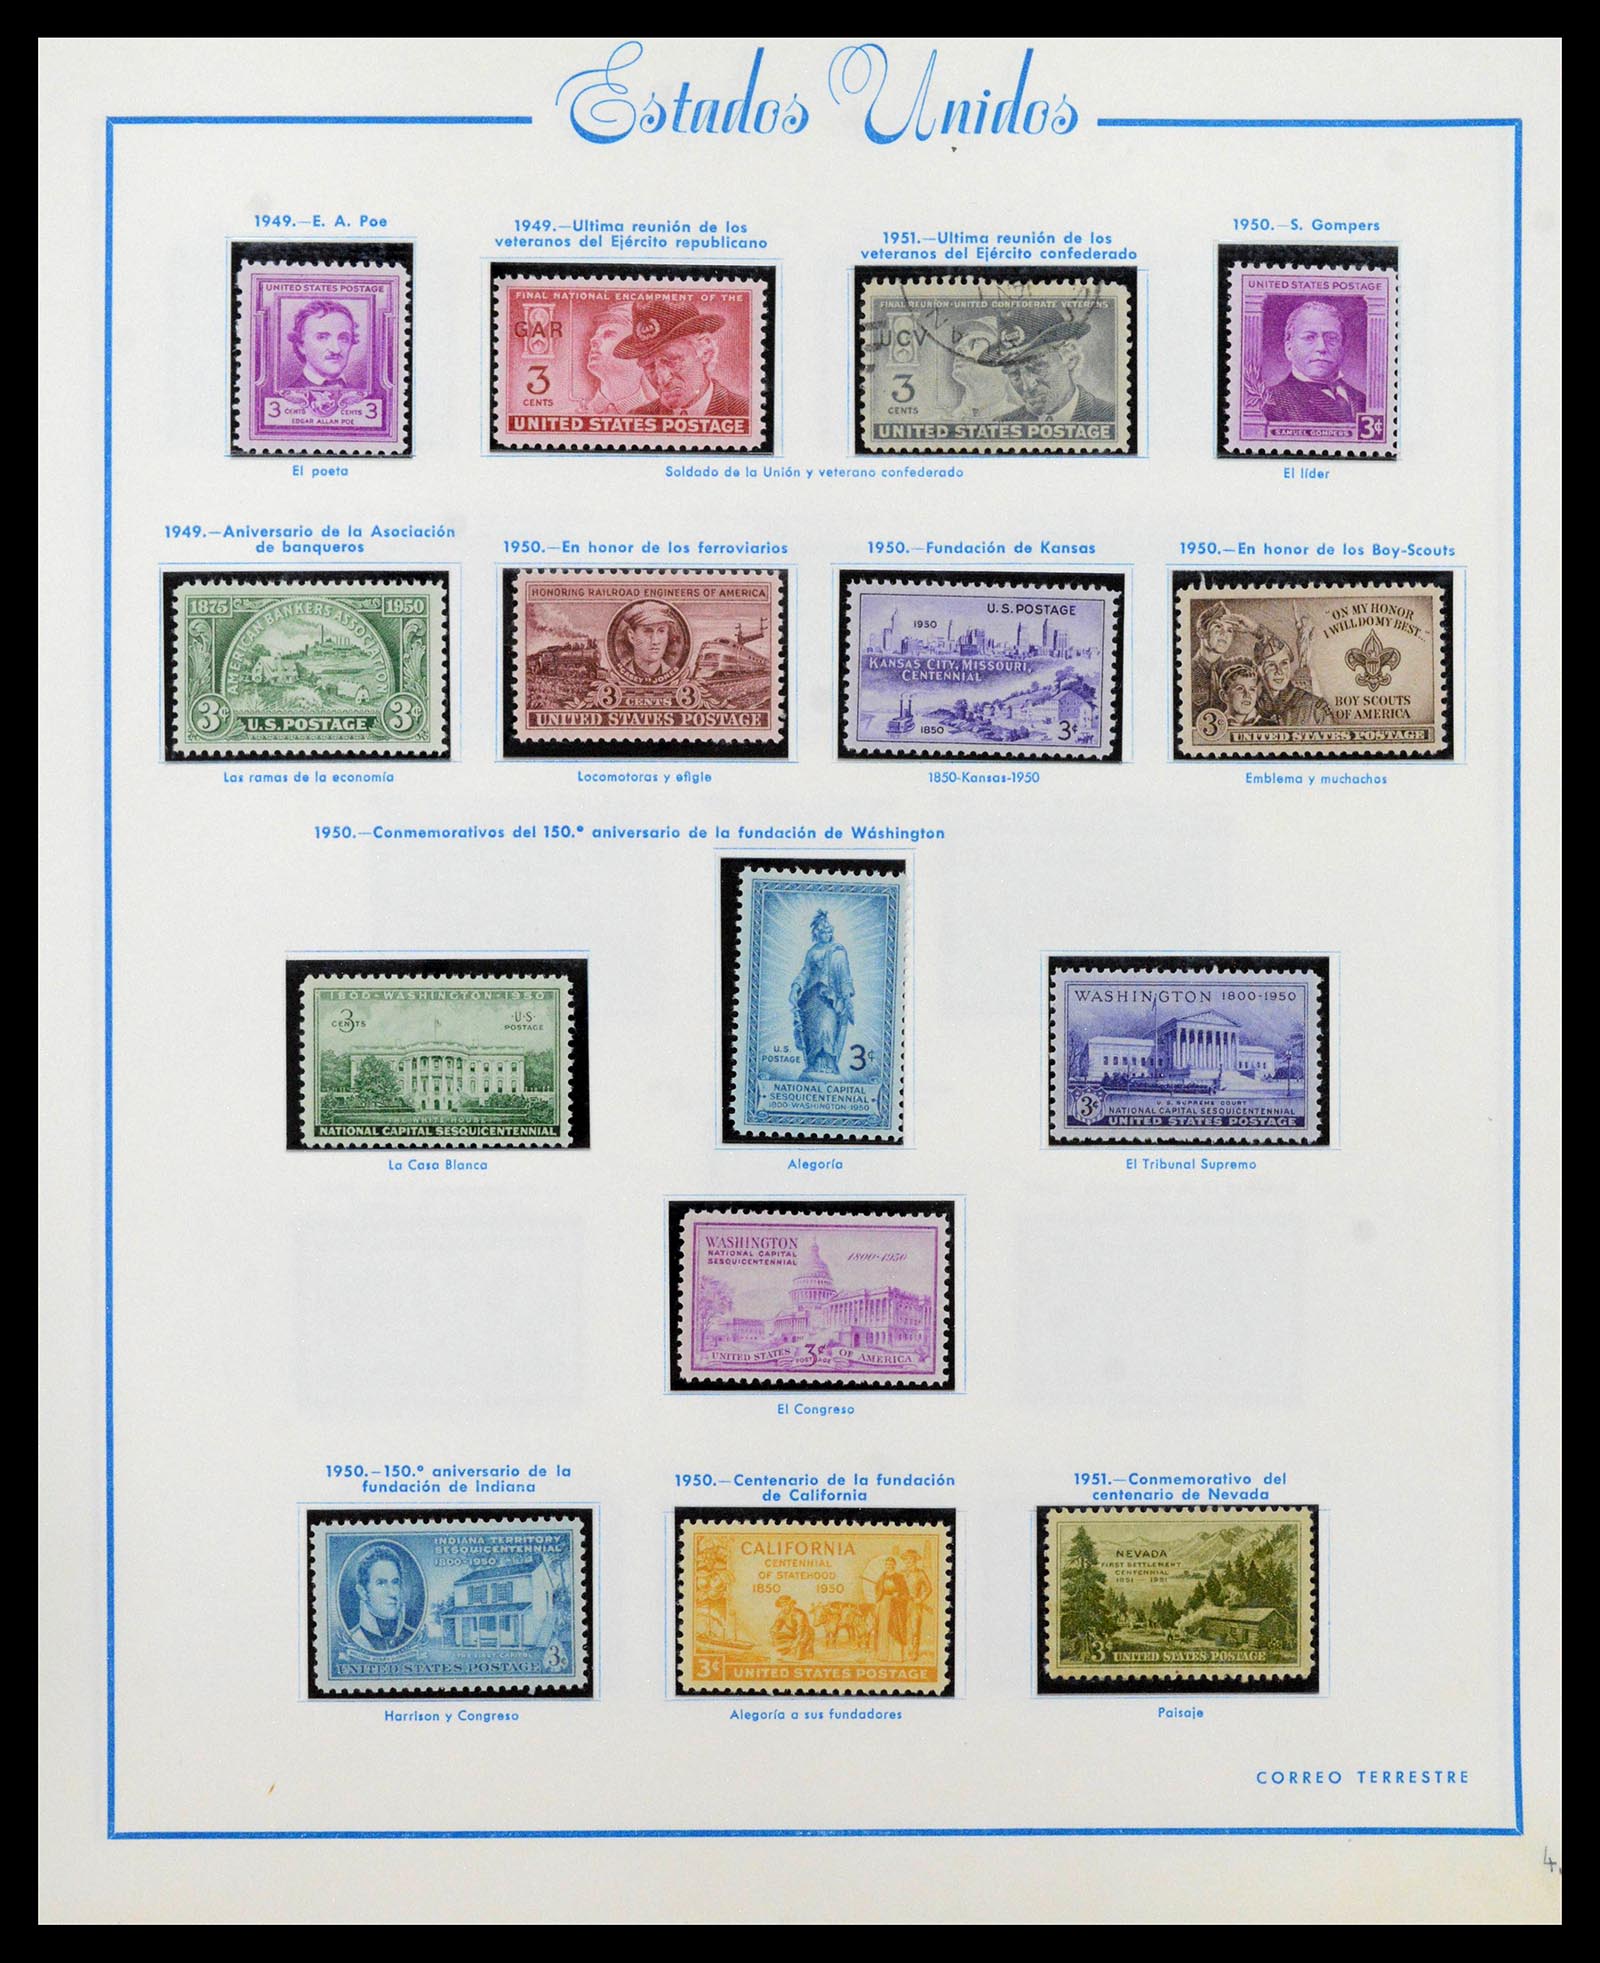 39190 0029 - Stamp collection 39190 USA 1851-1975.